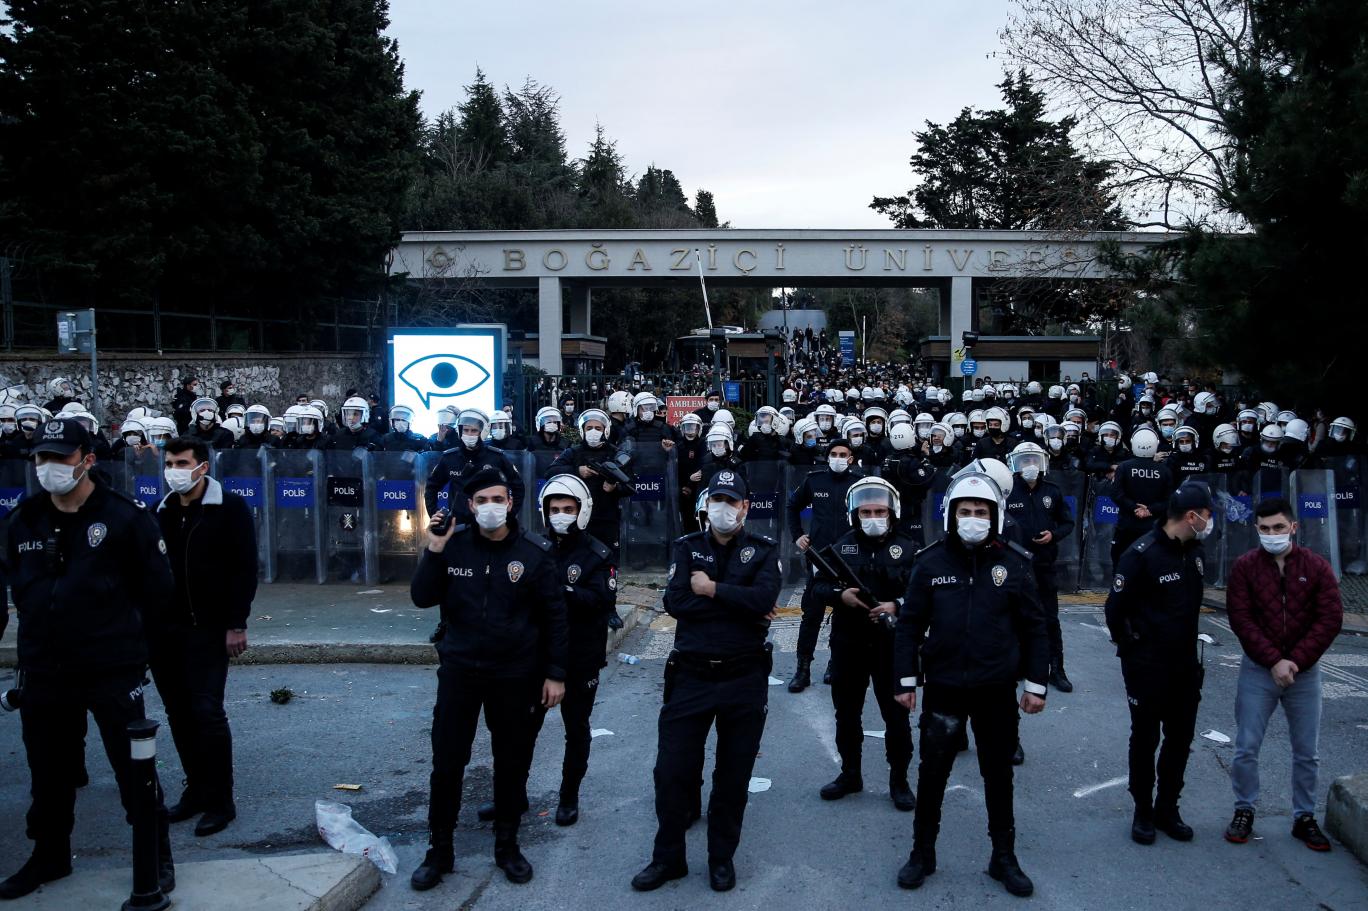 Valilik, Boğazici Üniversitesi gösterilerini yasakladı